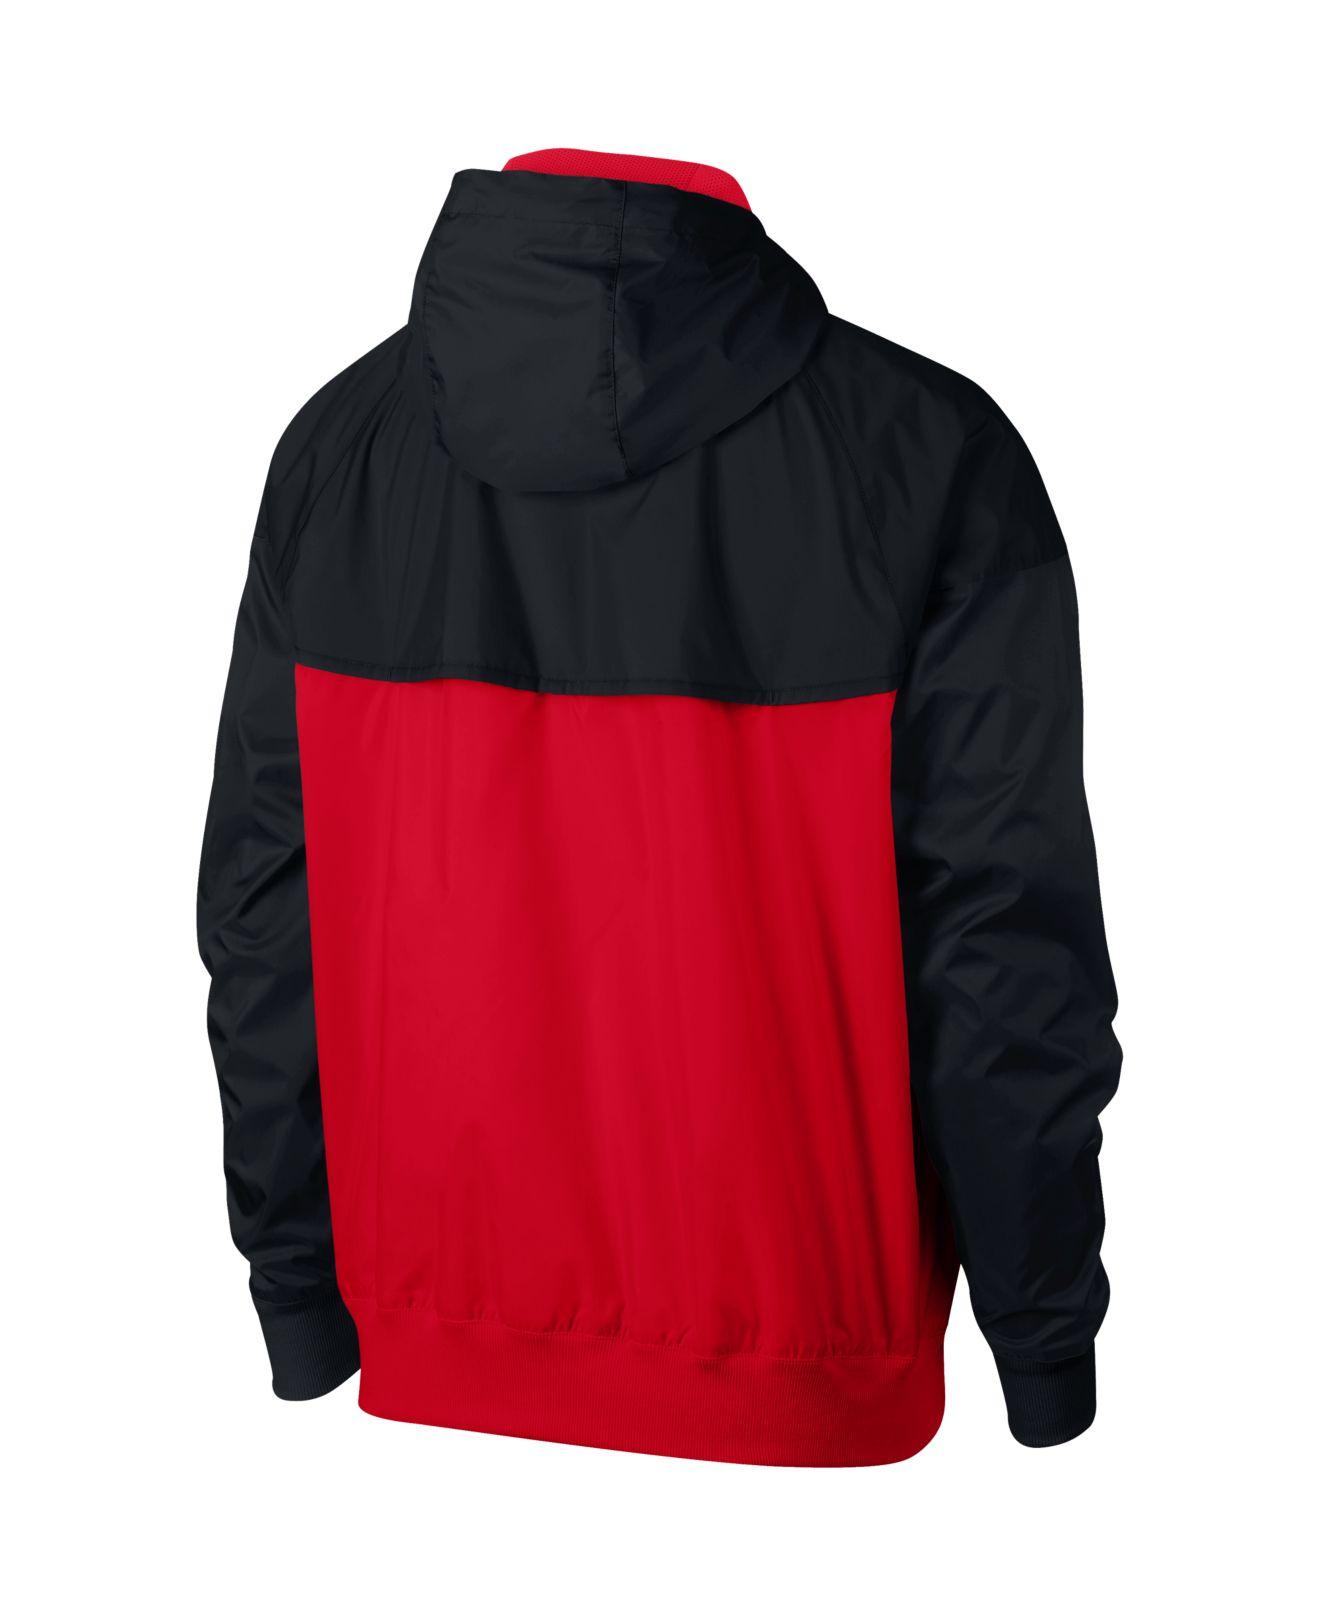 https://cdna.lystit.com/photos/macys/870f624f/nike-RedBlack-Sportswear-Windrunner-Jacket.jpeg